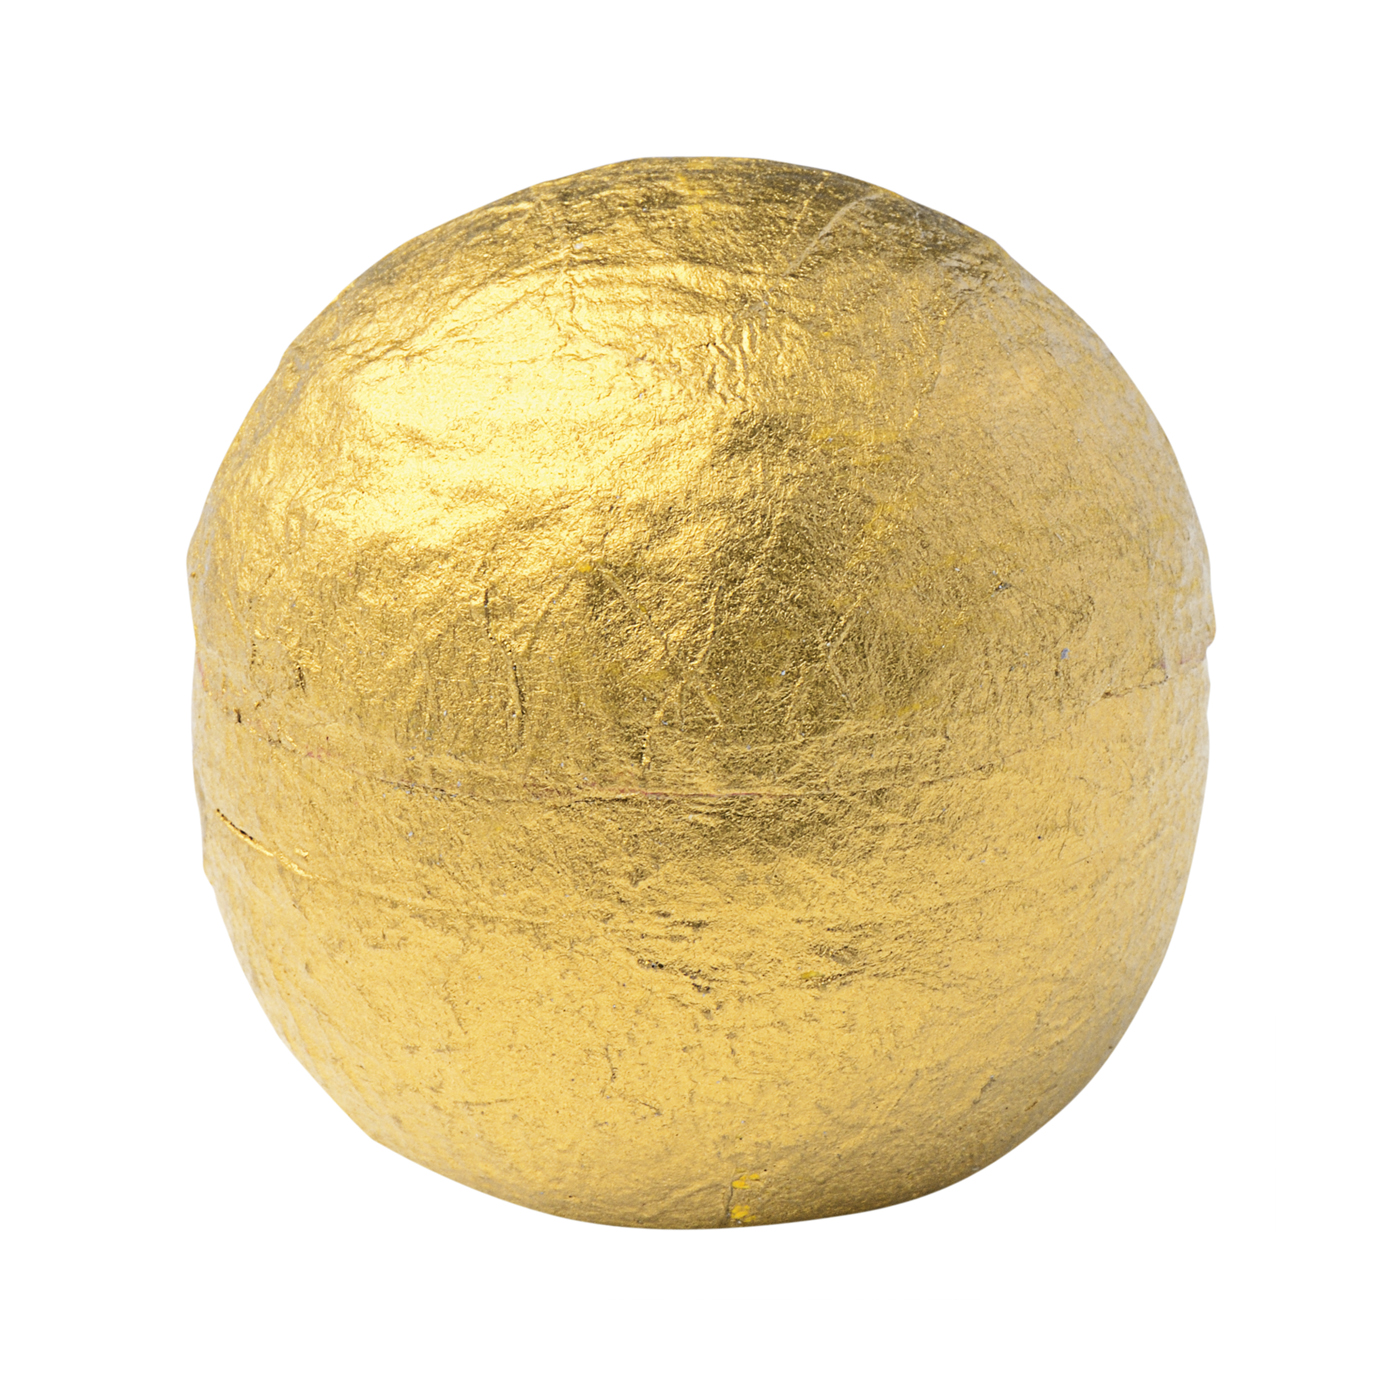 Jewellery Packaging "Ball", Gold, ø 50 mm - 1 piece